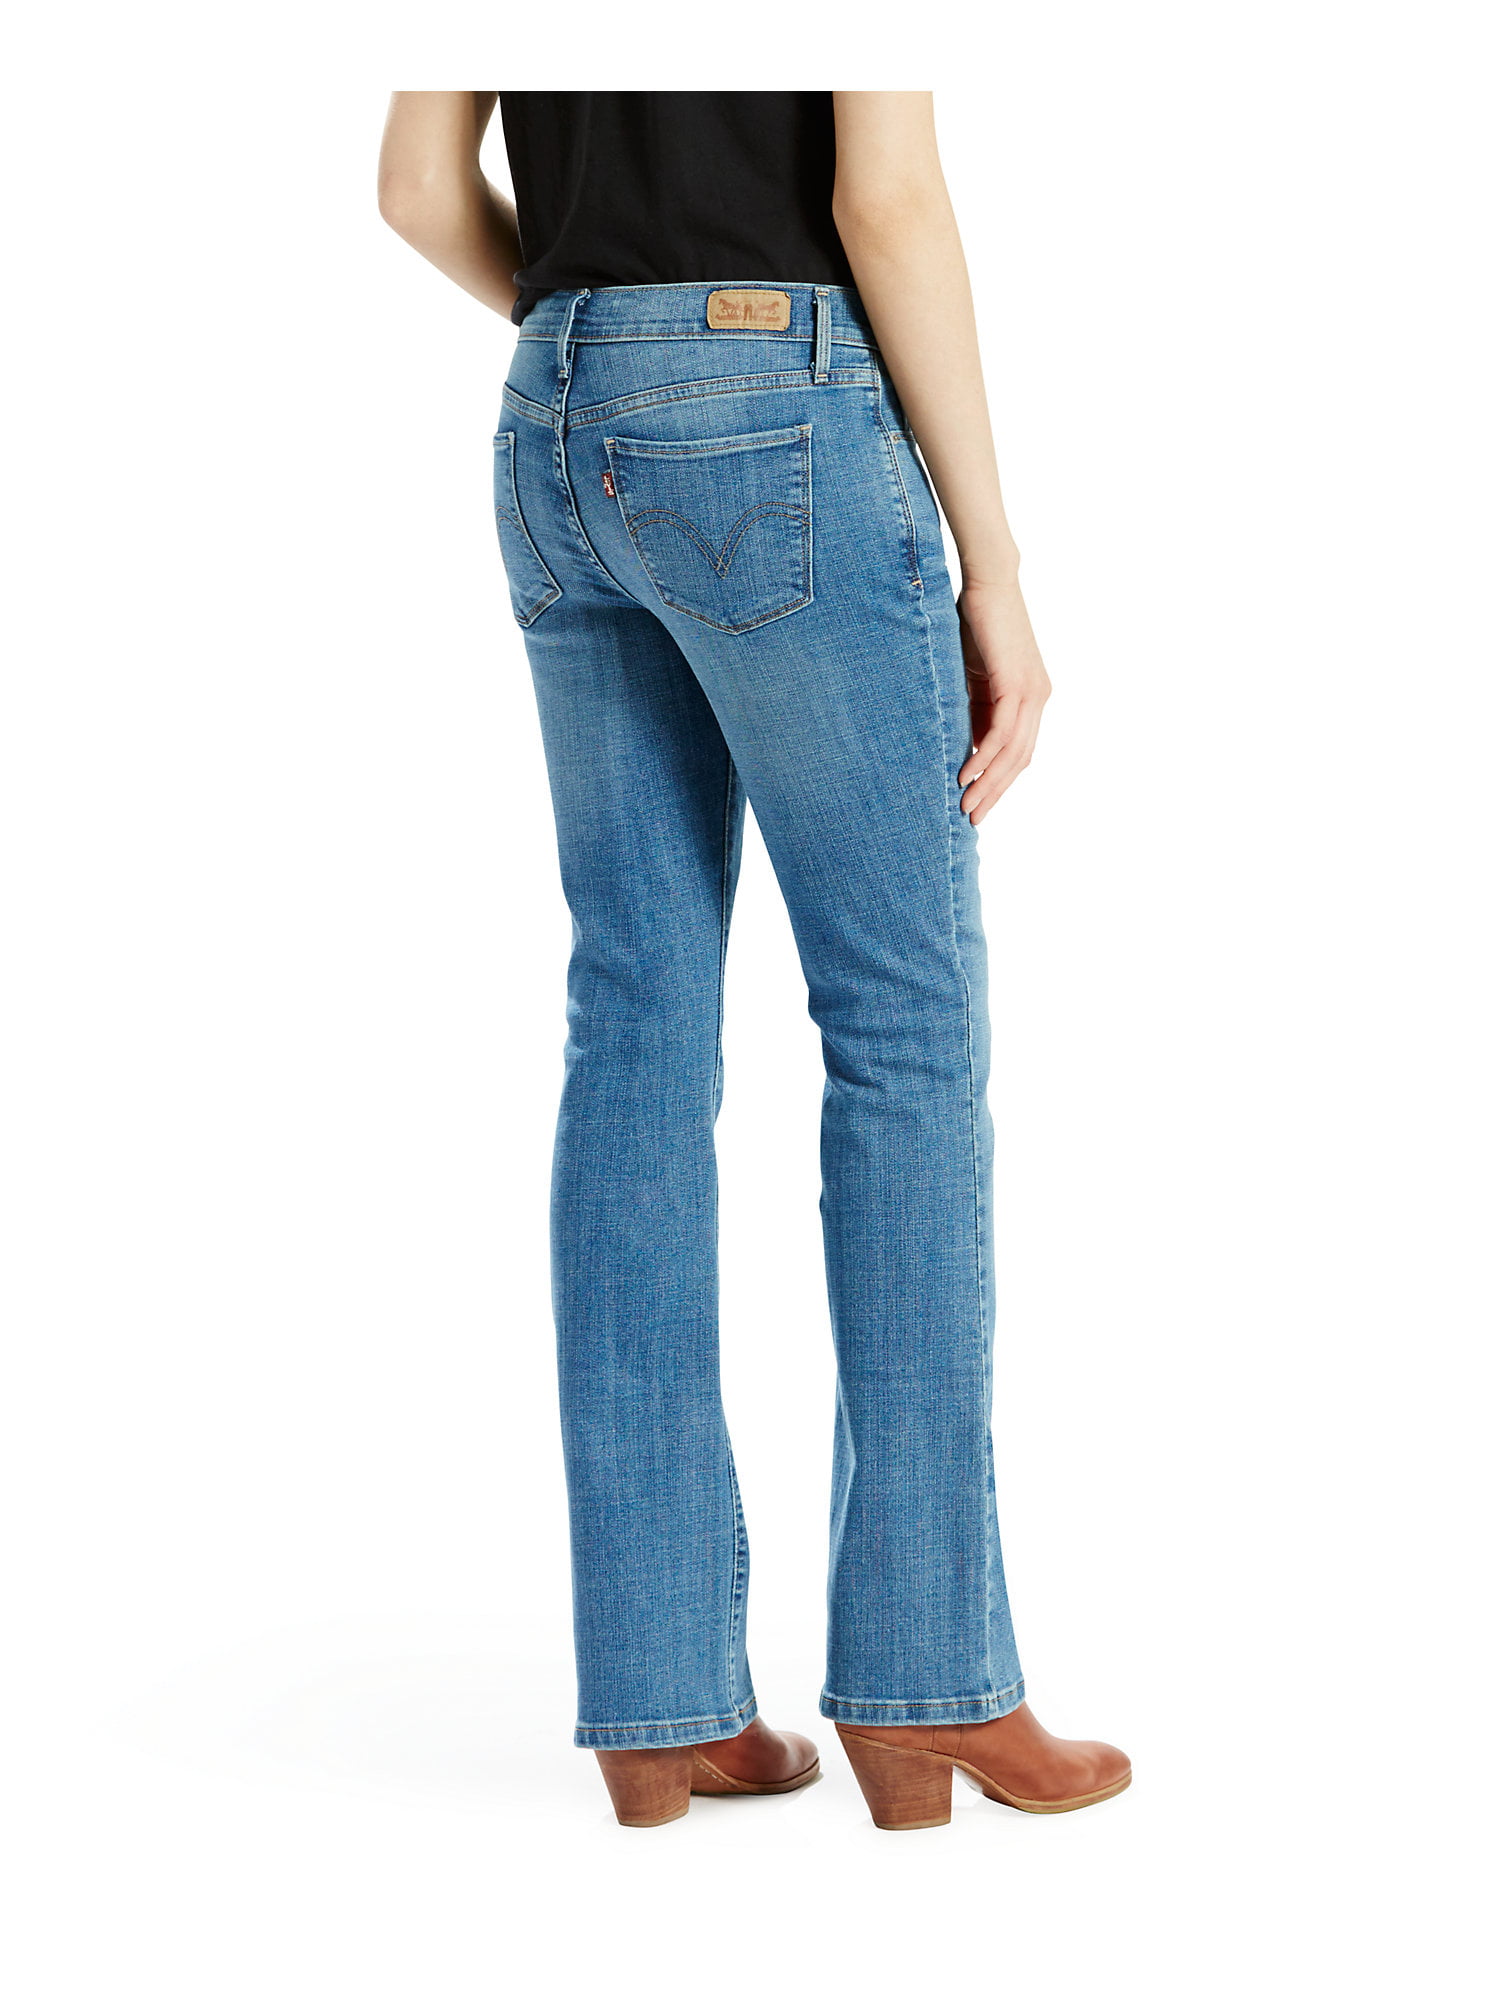 515 Bootcut Jeans - Walmart.com 